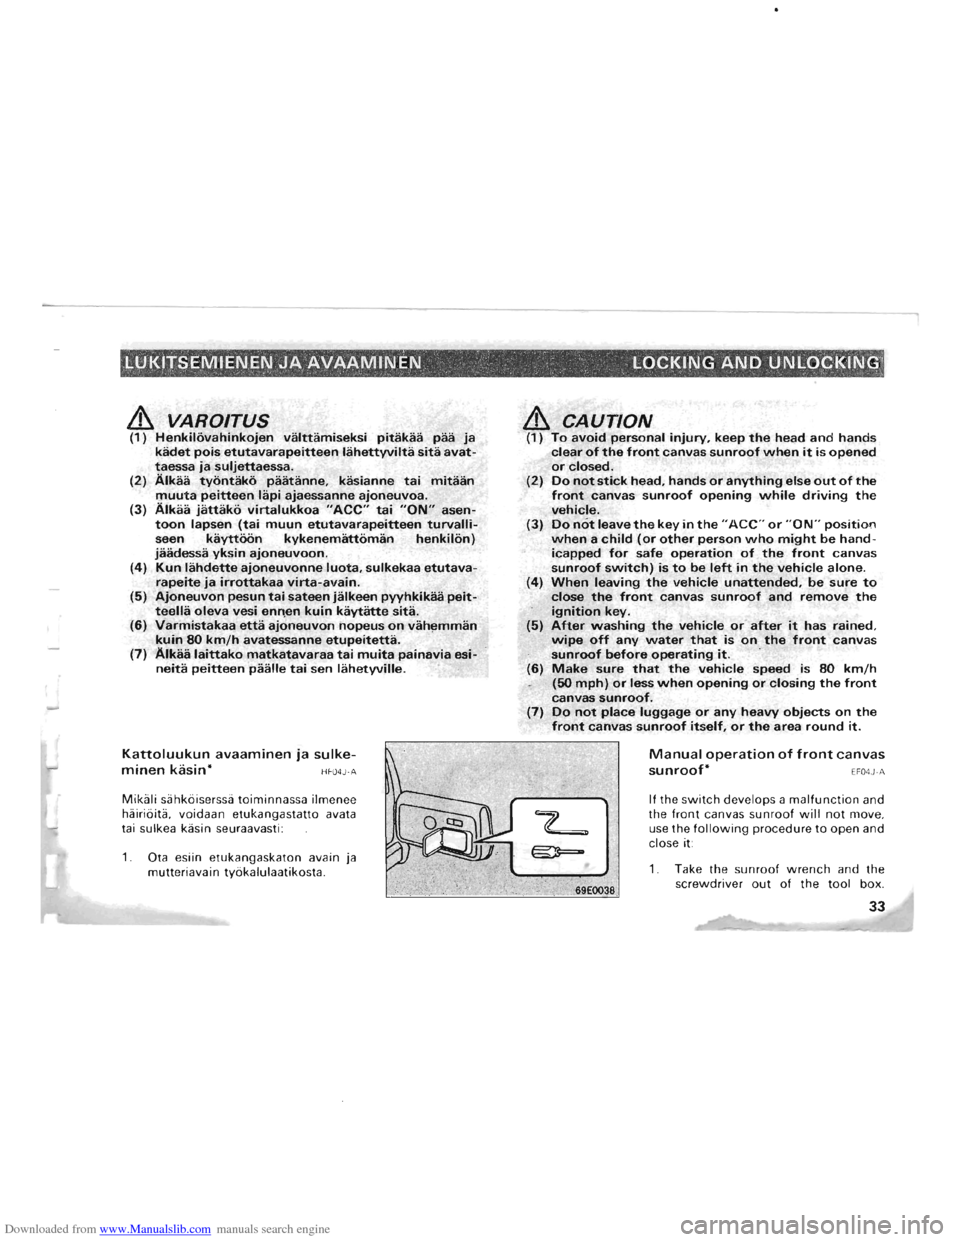 MITSUBISHI PAJERO 1996 2.G Owners Manual Downloaded from www.Manualslib.com manuals search engine .LUKITSEMIENEN JA AVAAMINEN.· LOCKING AND UNLOCKING; ; ." "., .  " _!,. 
& VAROITUS (1) Henkilovahinkojen valttamiseksi pitakaa paa Ja kadet